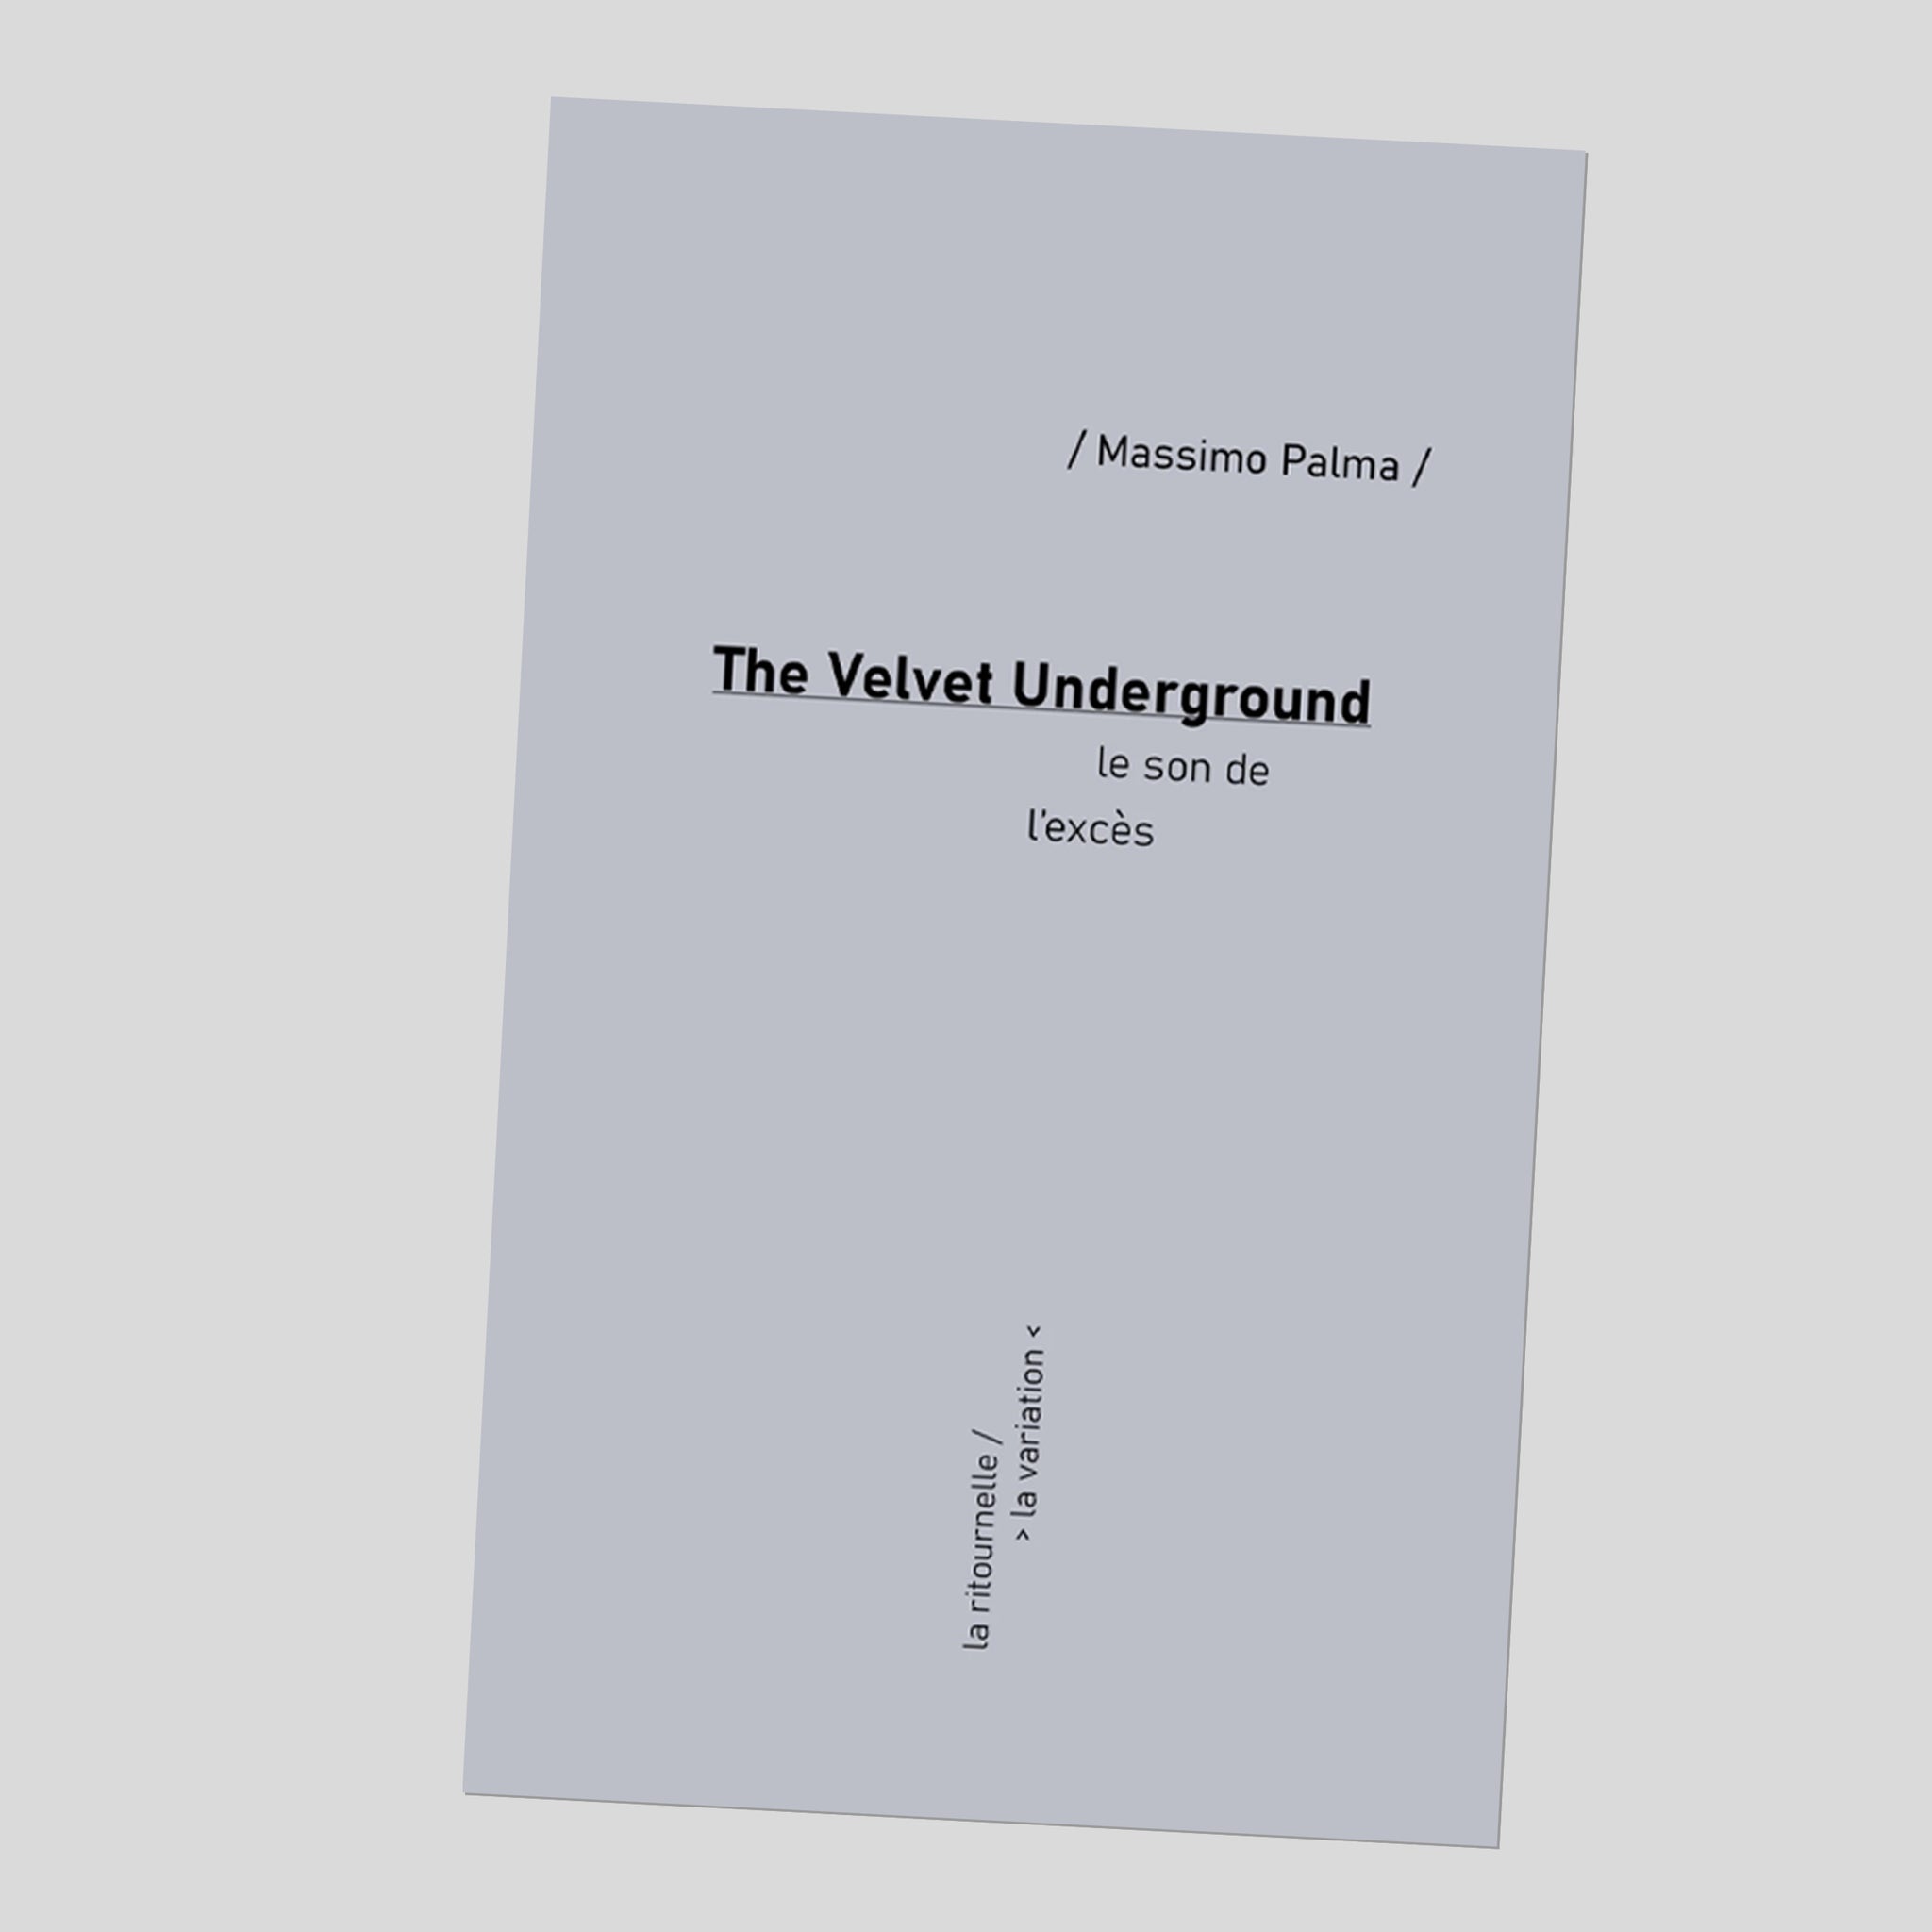 The Velvet Underground. Le son de l'excès - Massimo Palma